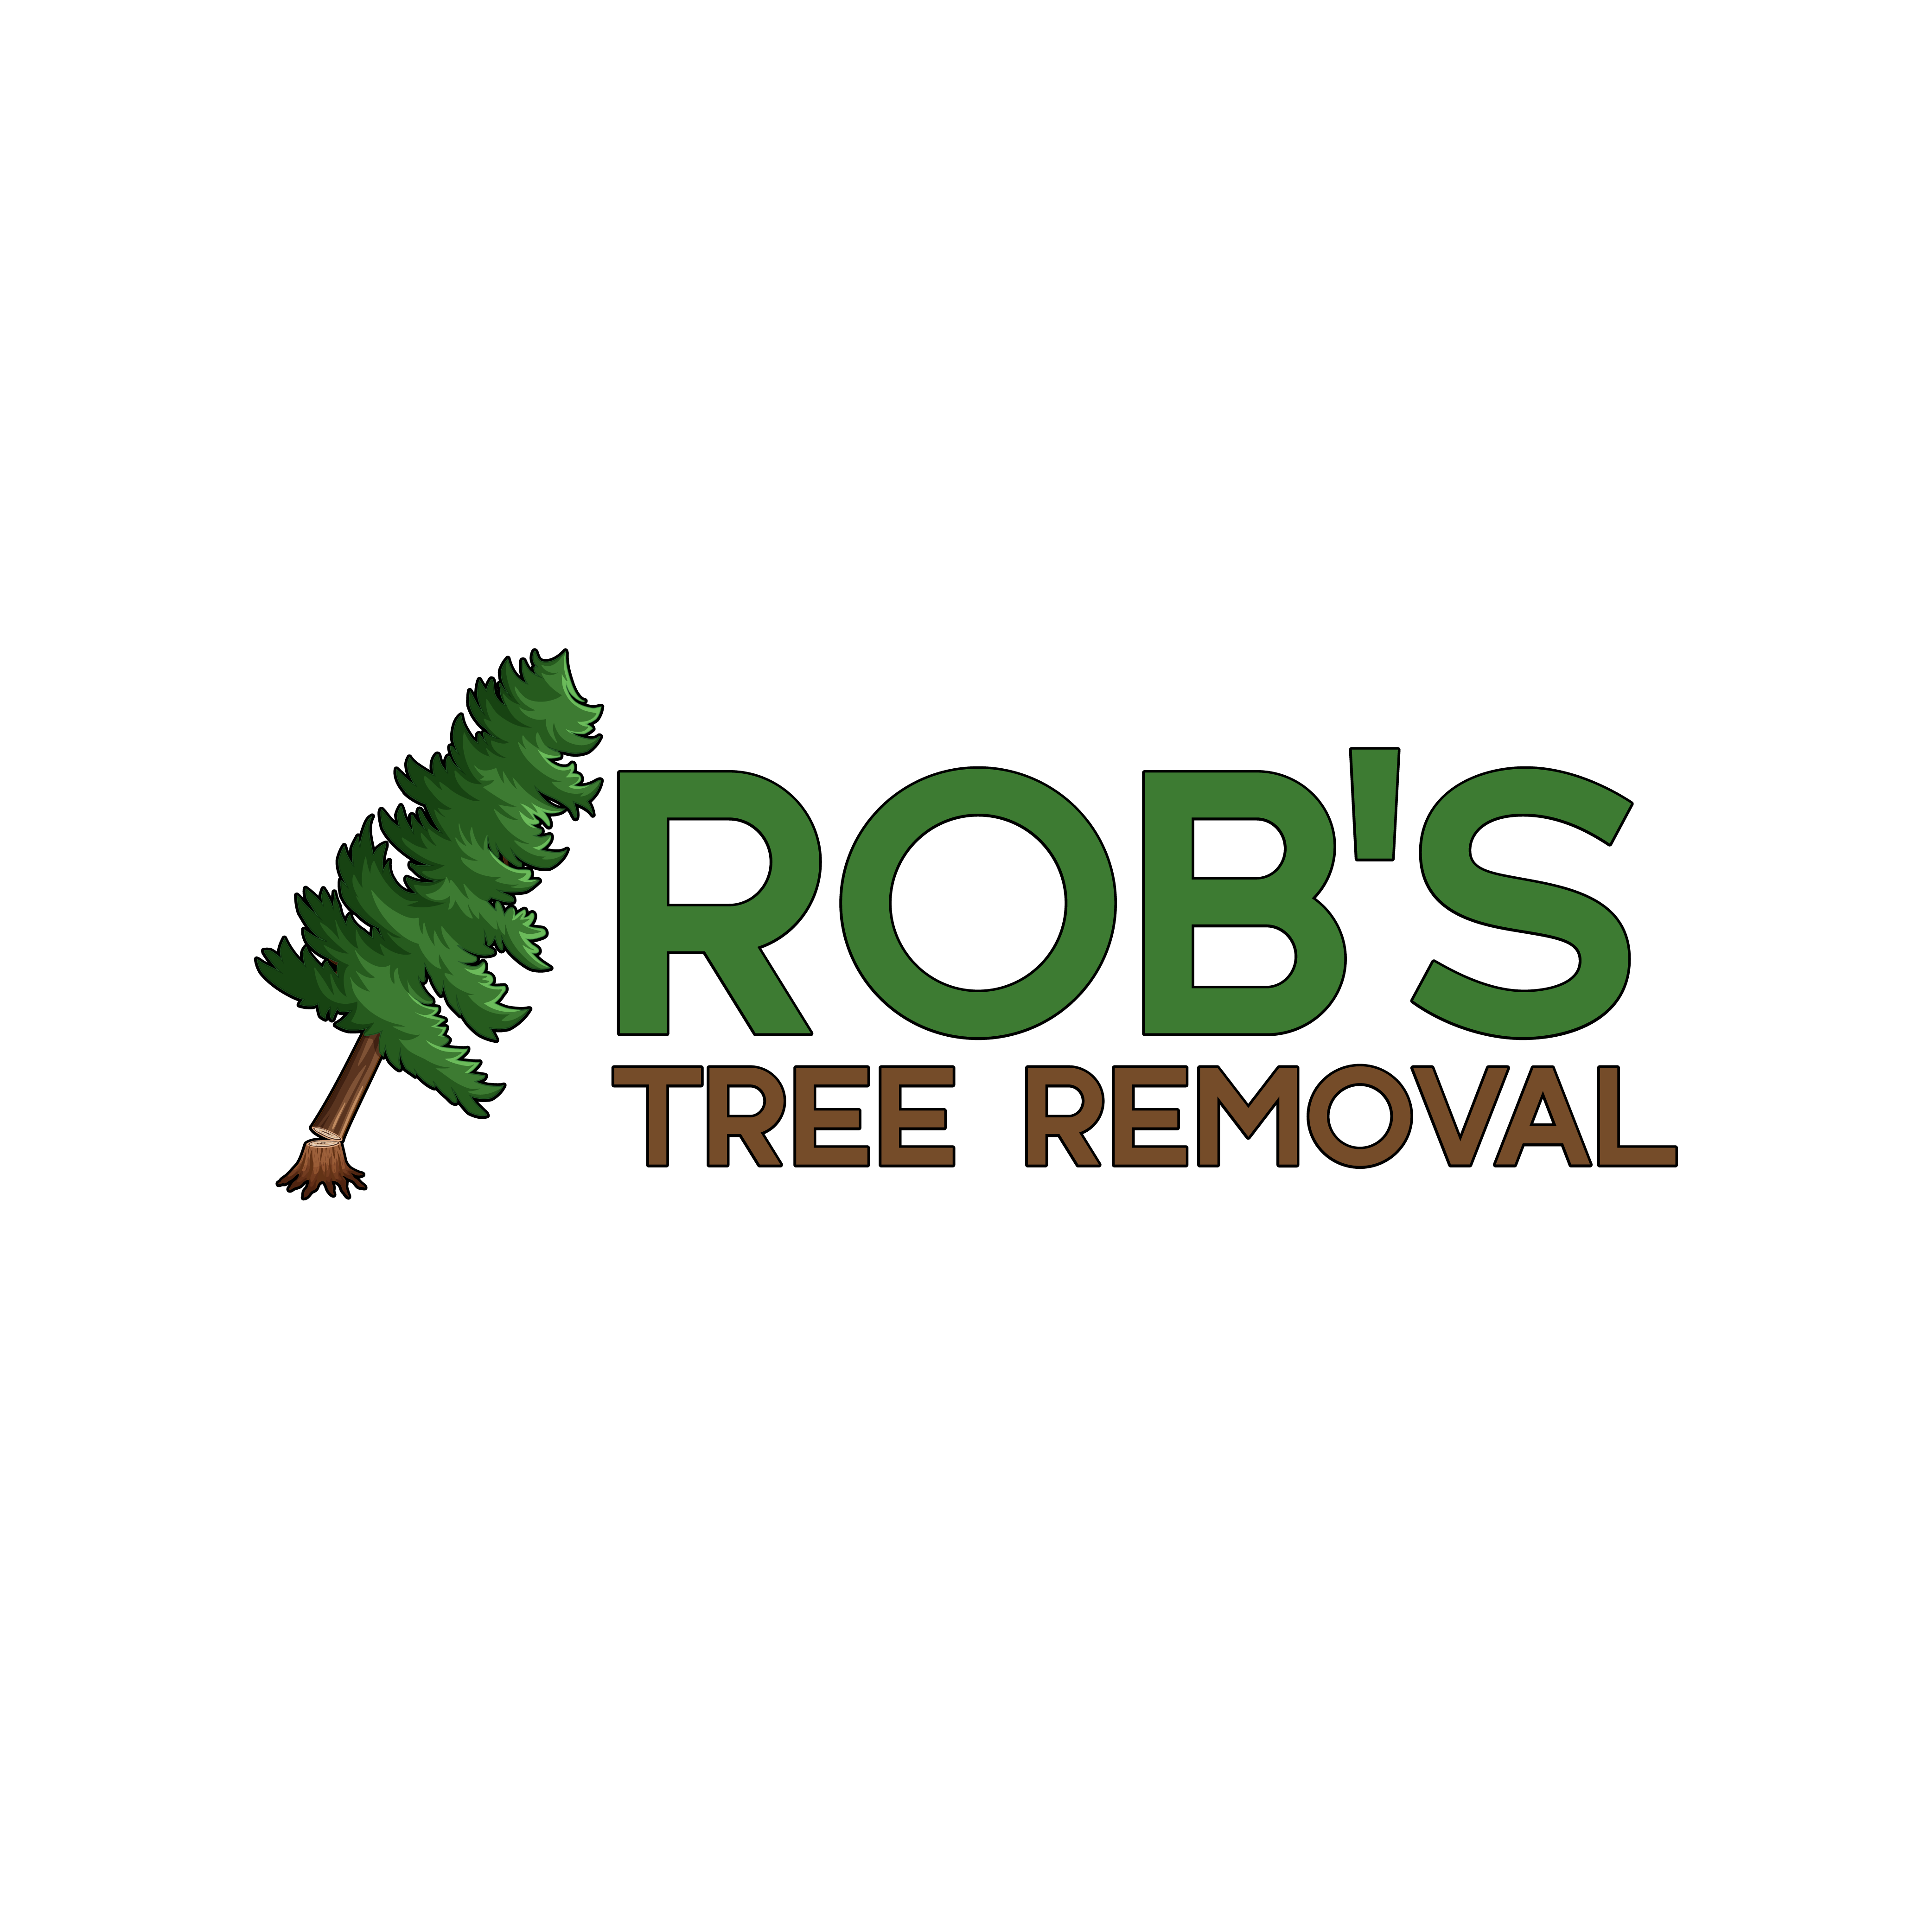 Rob's Tree Removal's logo